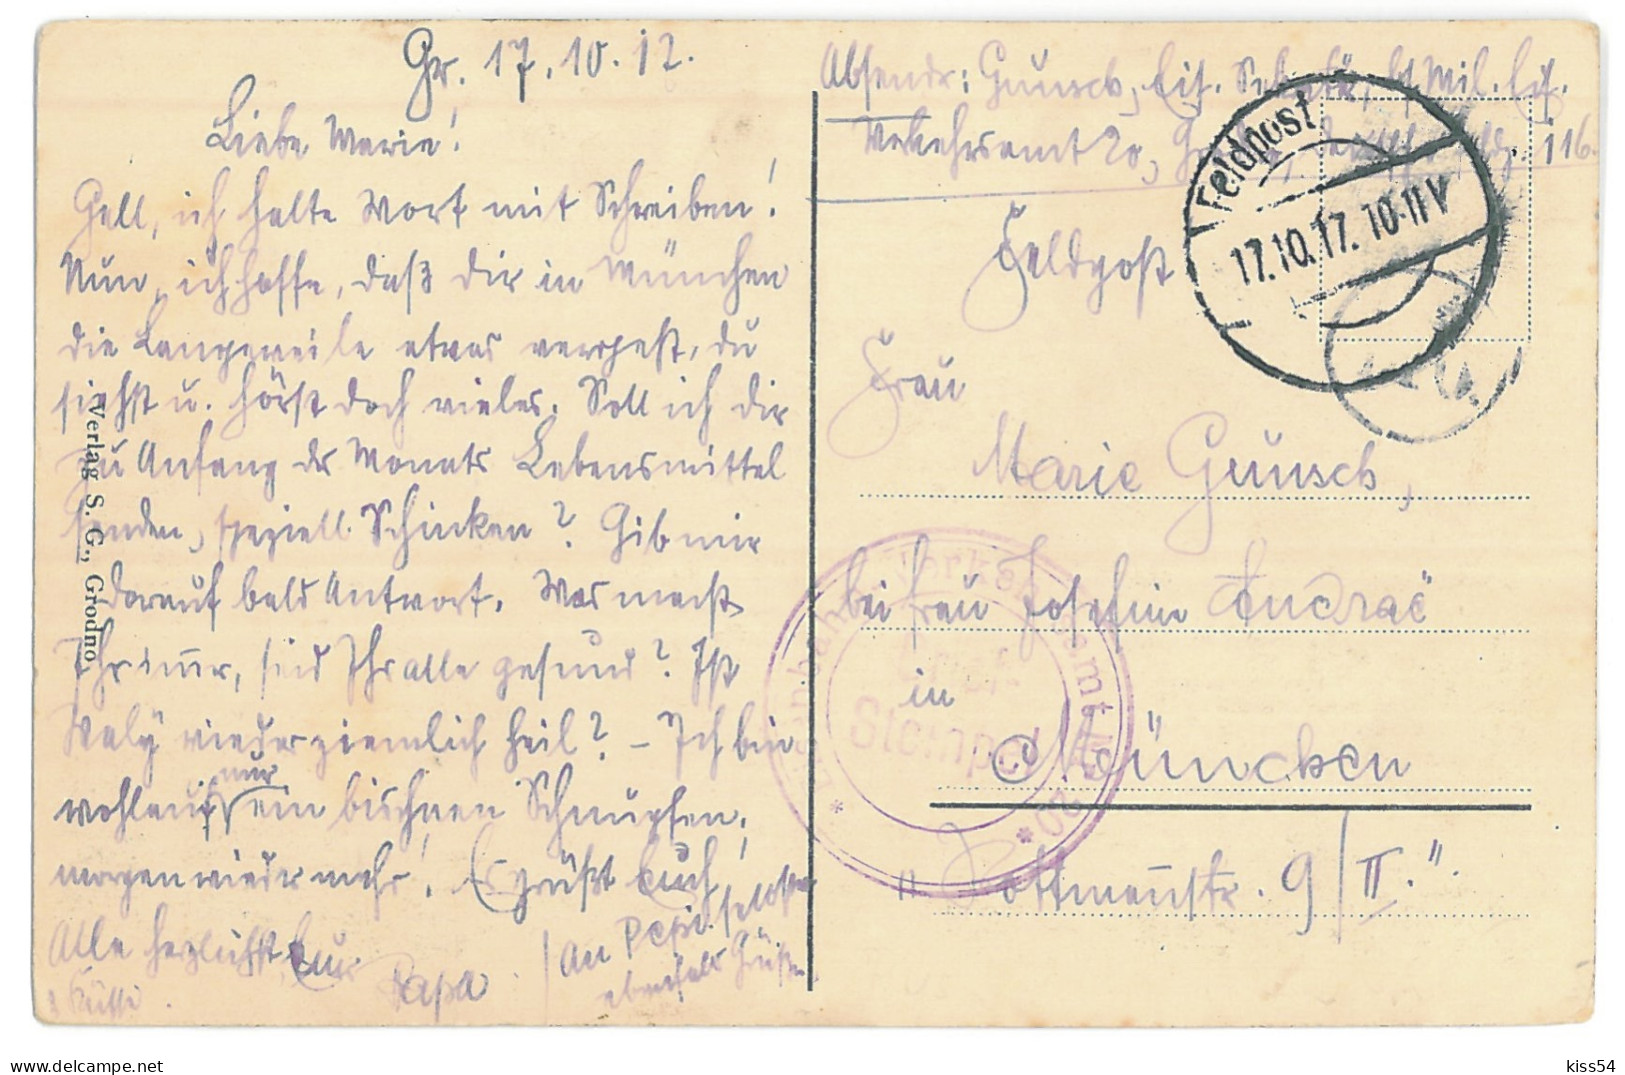 BL 21 - 13668 GRODNO, Belarus, Panorama - Old Postcard, CENSOR - Used - 1917 - Belarus